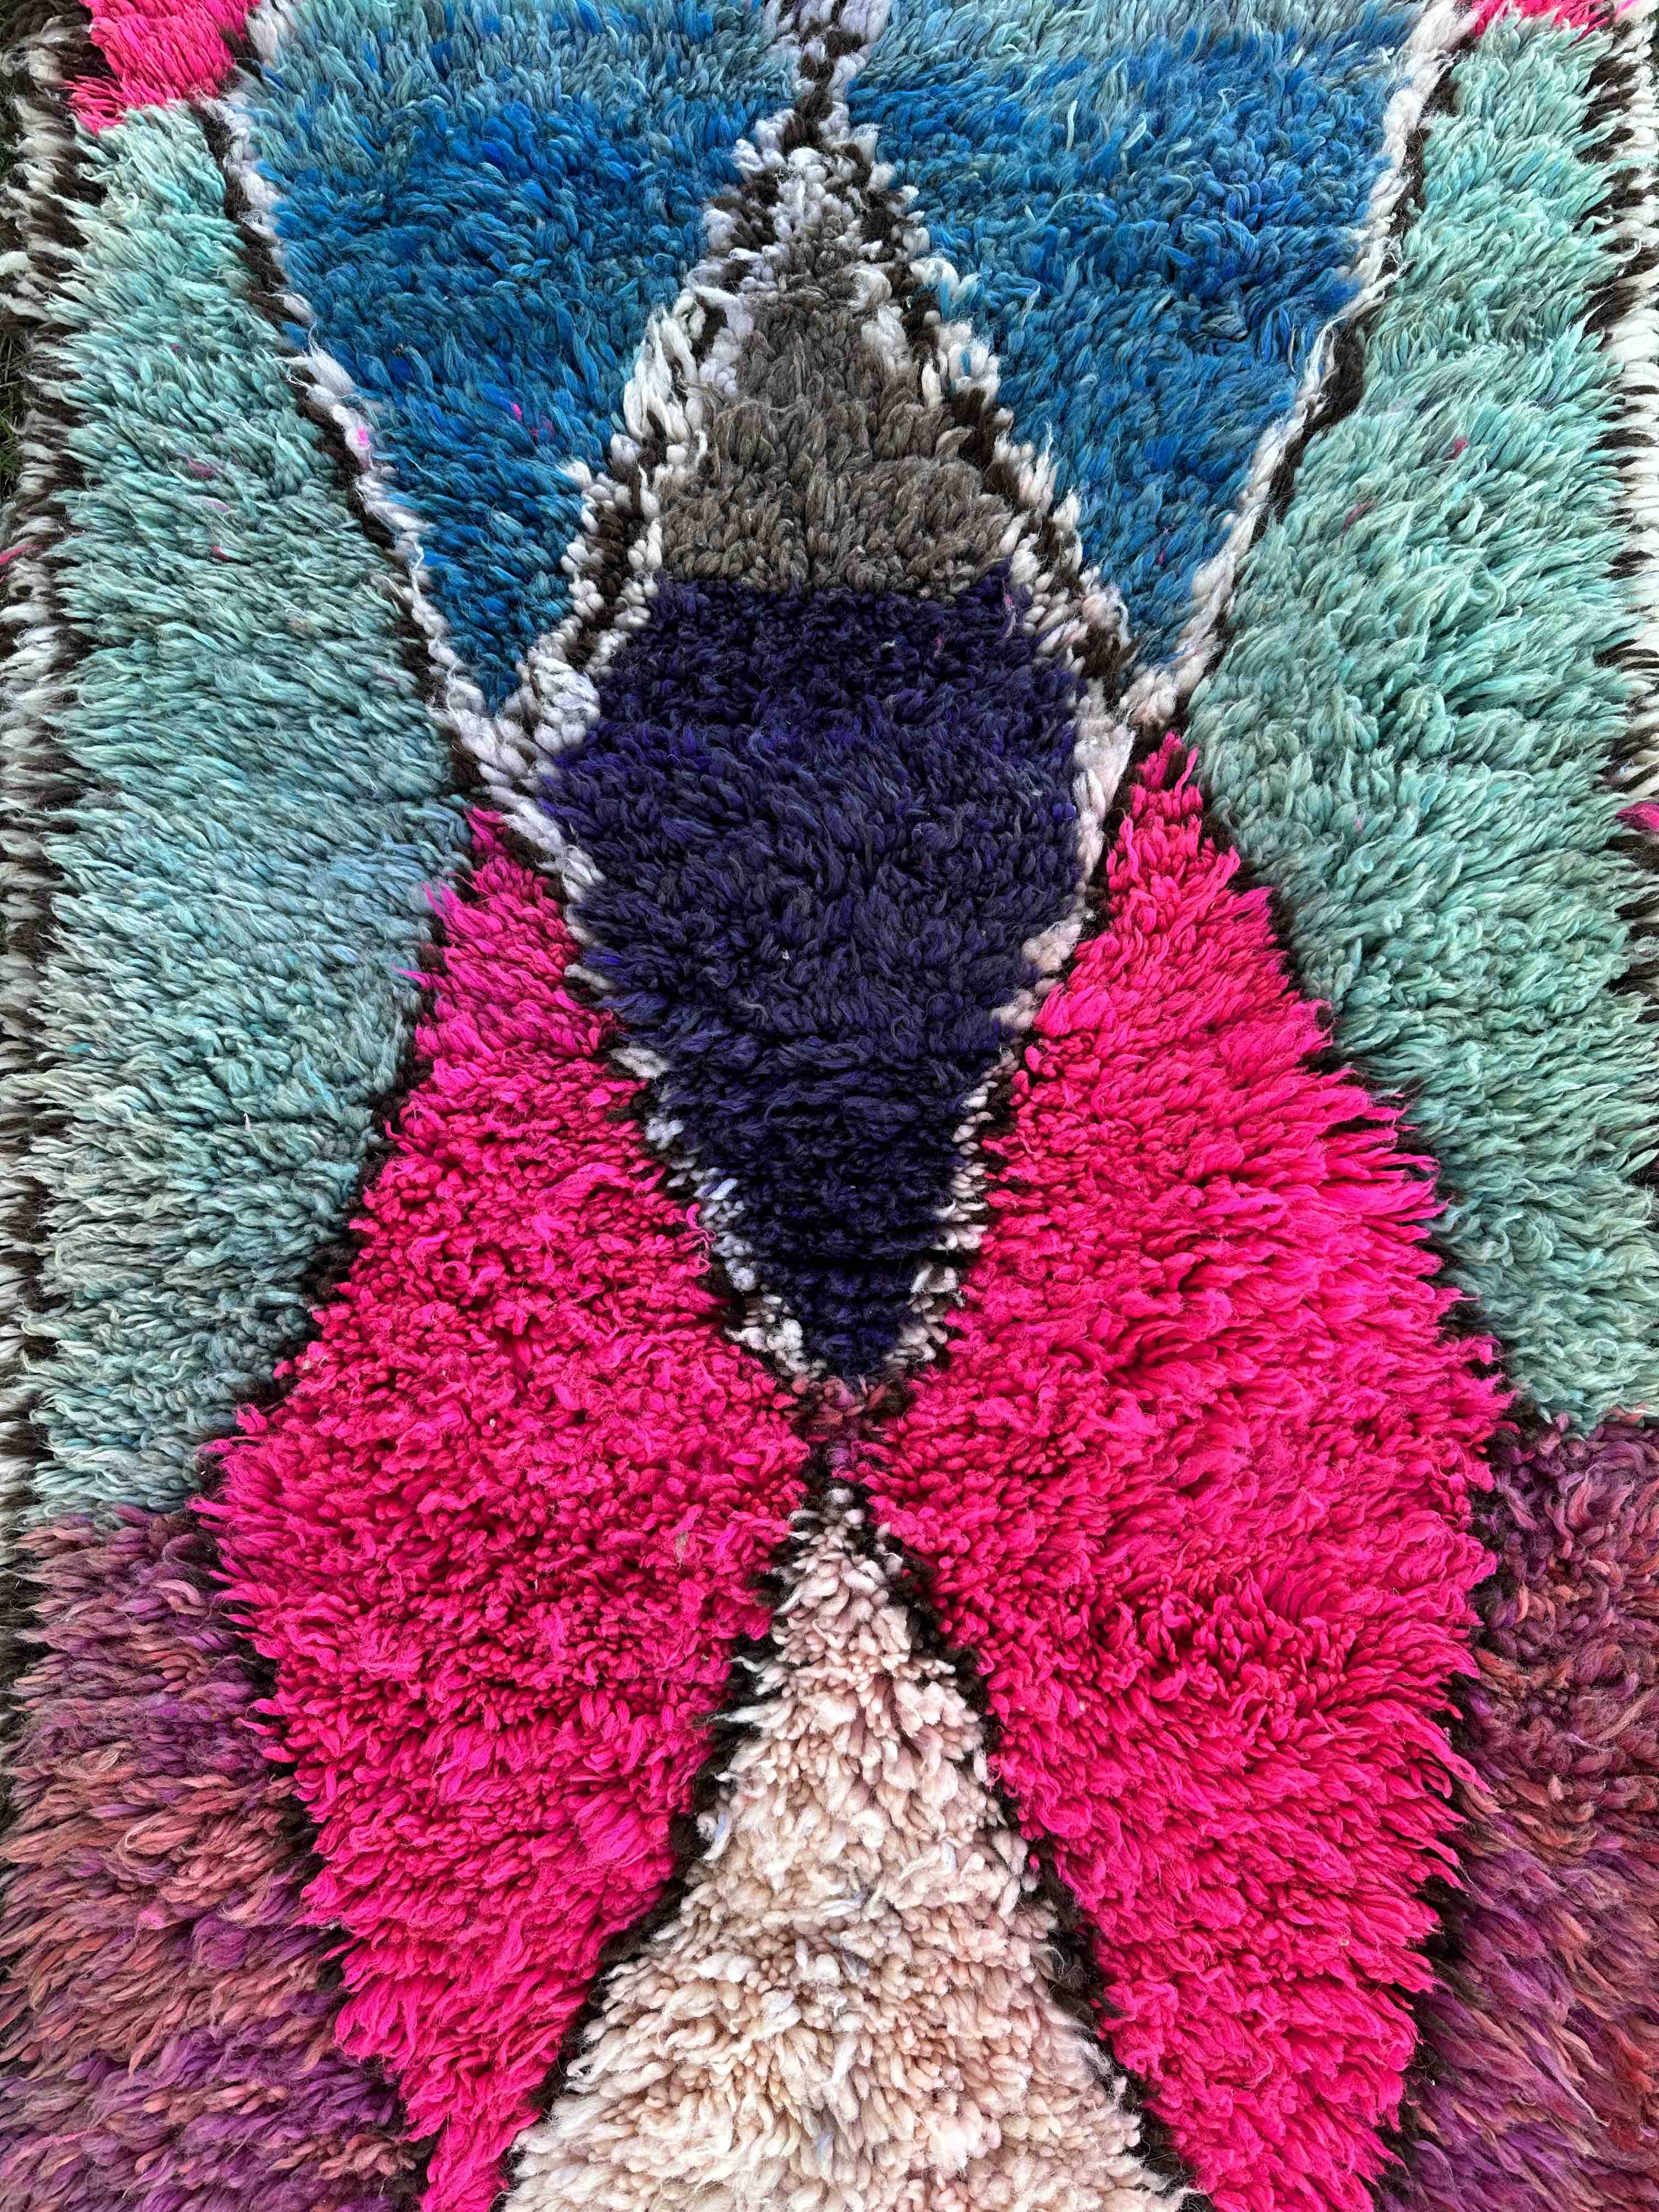 Boucherouite tæppe i farverne lyserød, turkis, mørkeblå og hvid